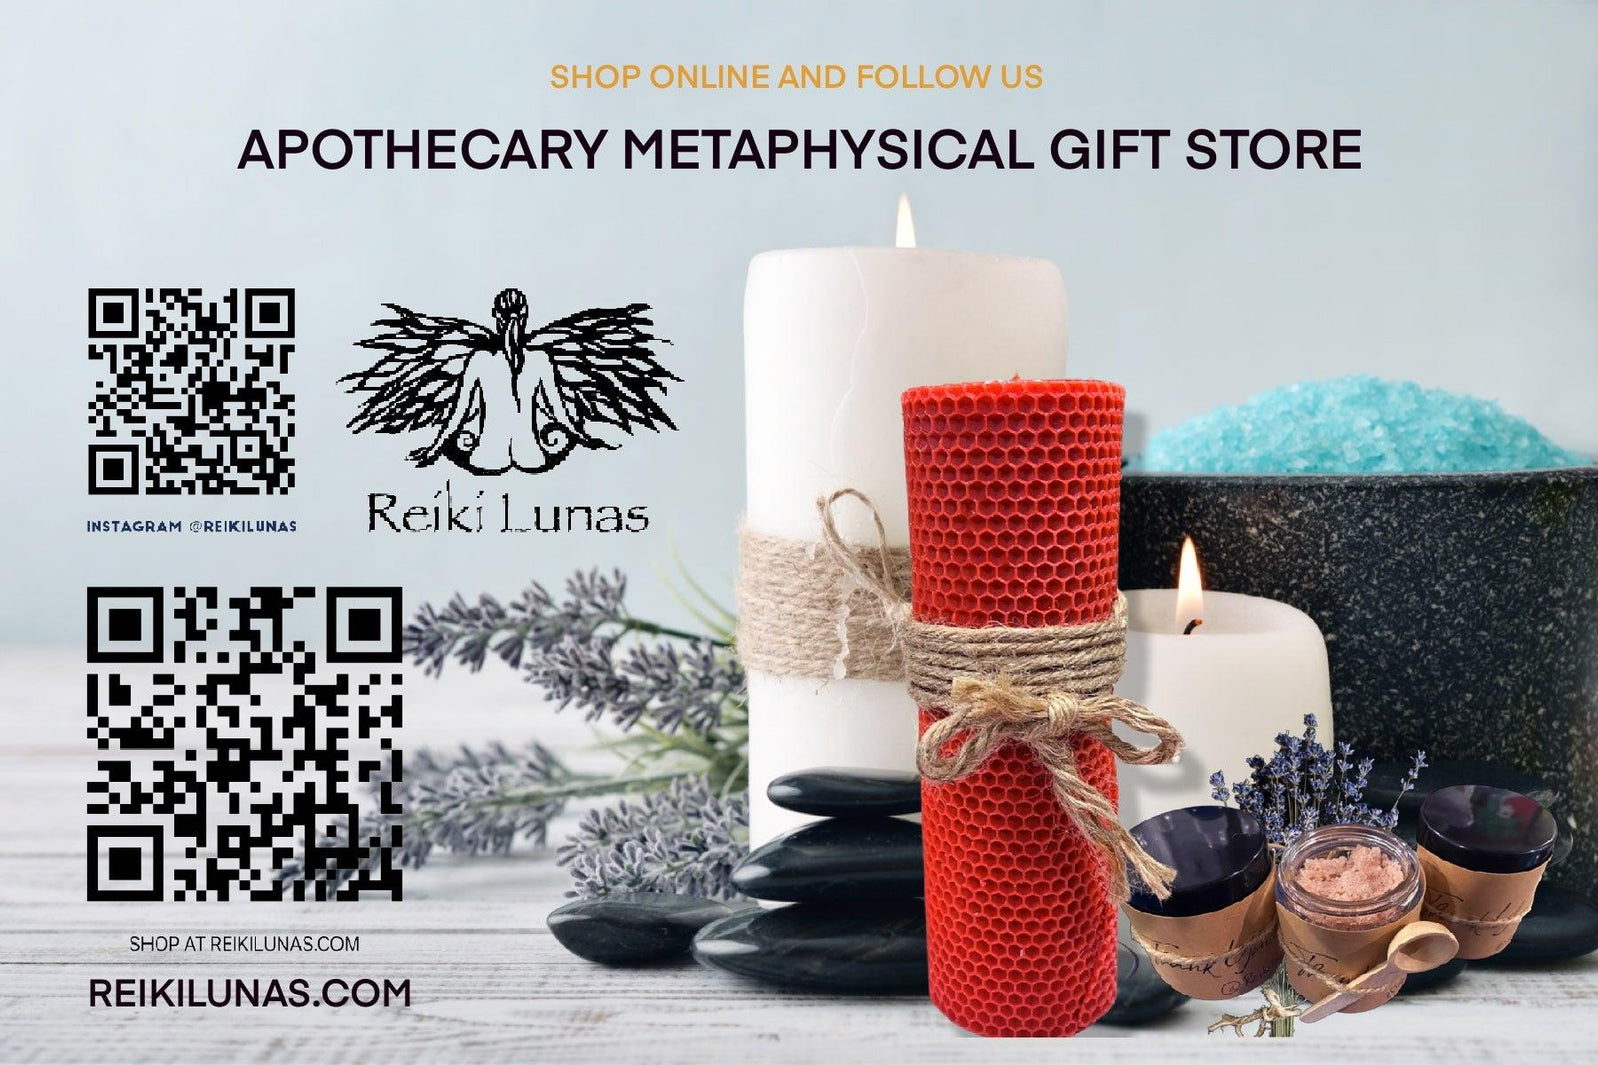 An Apothecary Metaphysical Gift Shop, also described as an Alternative Healing Shop - Blu Lunas Shoppe